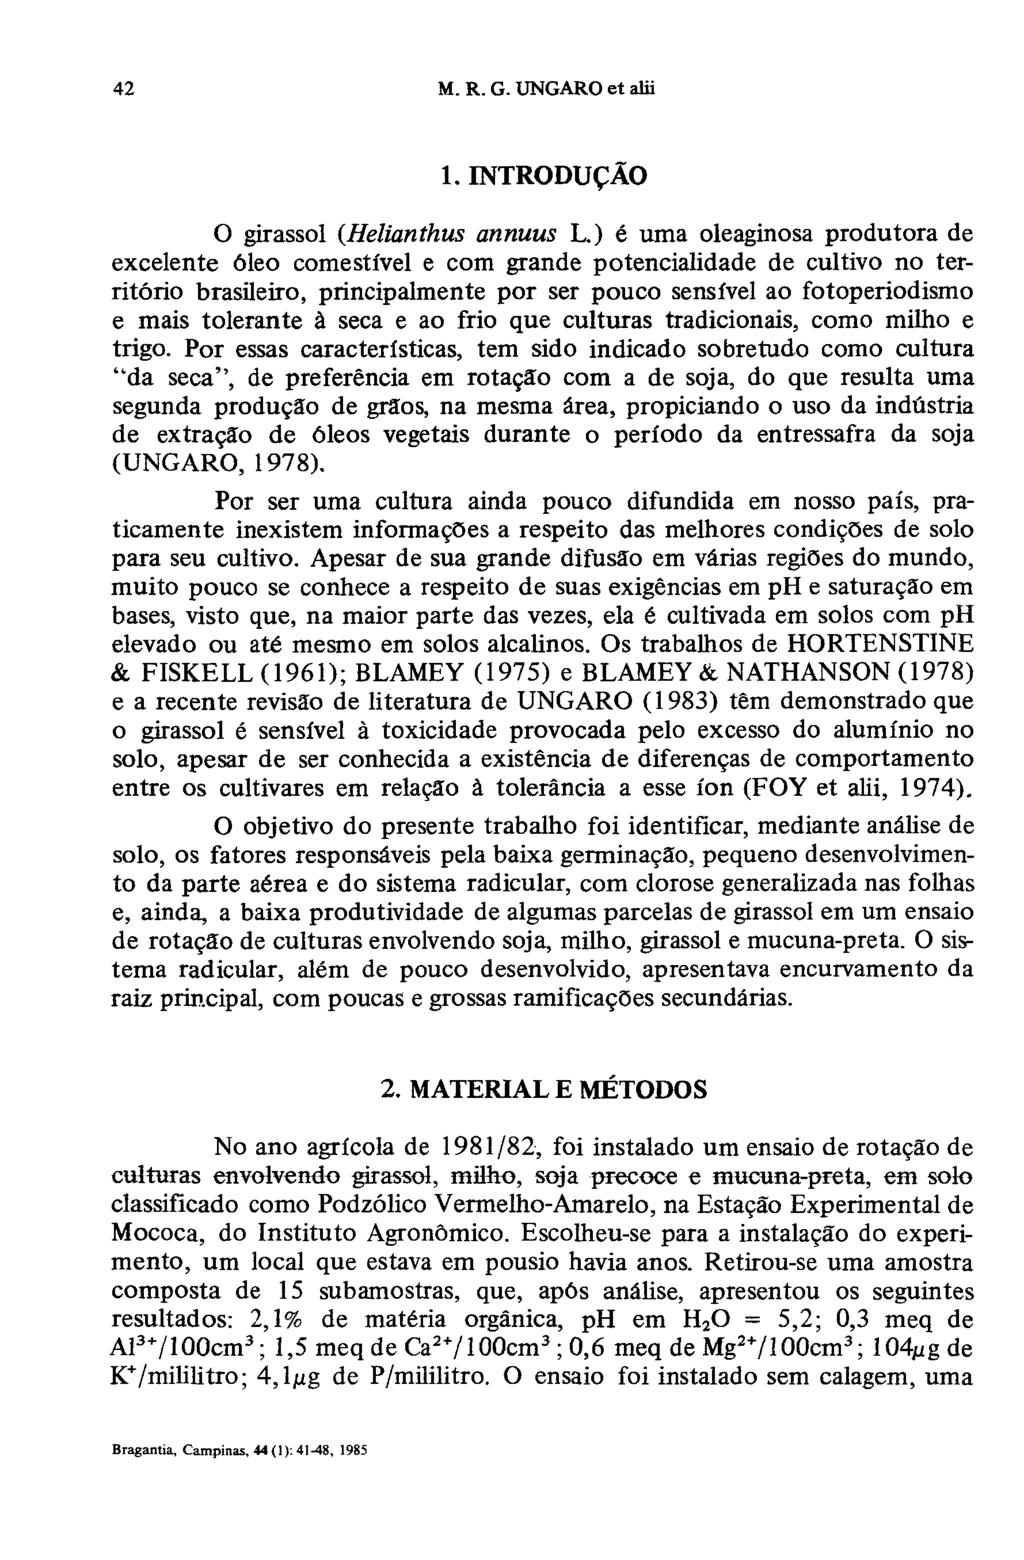 1. INTRODUÇÃO O girassol (Helianthus annuus L.